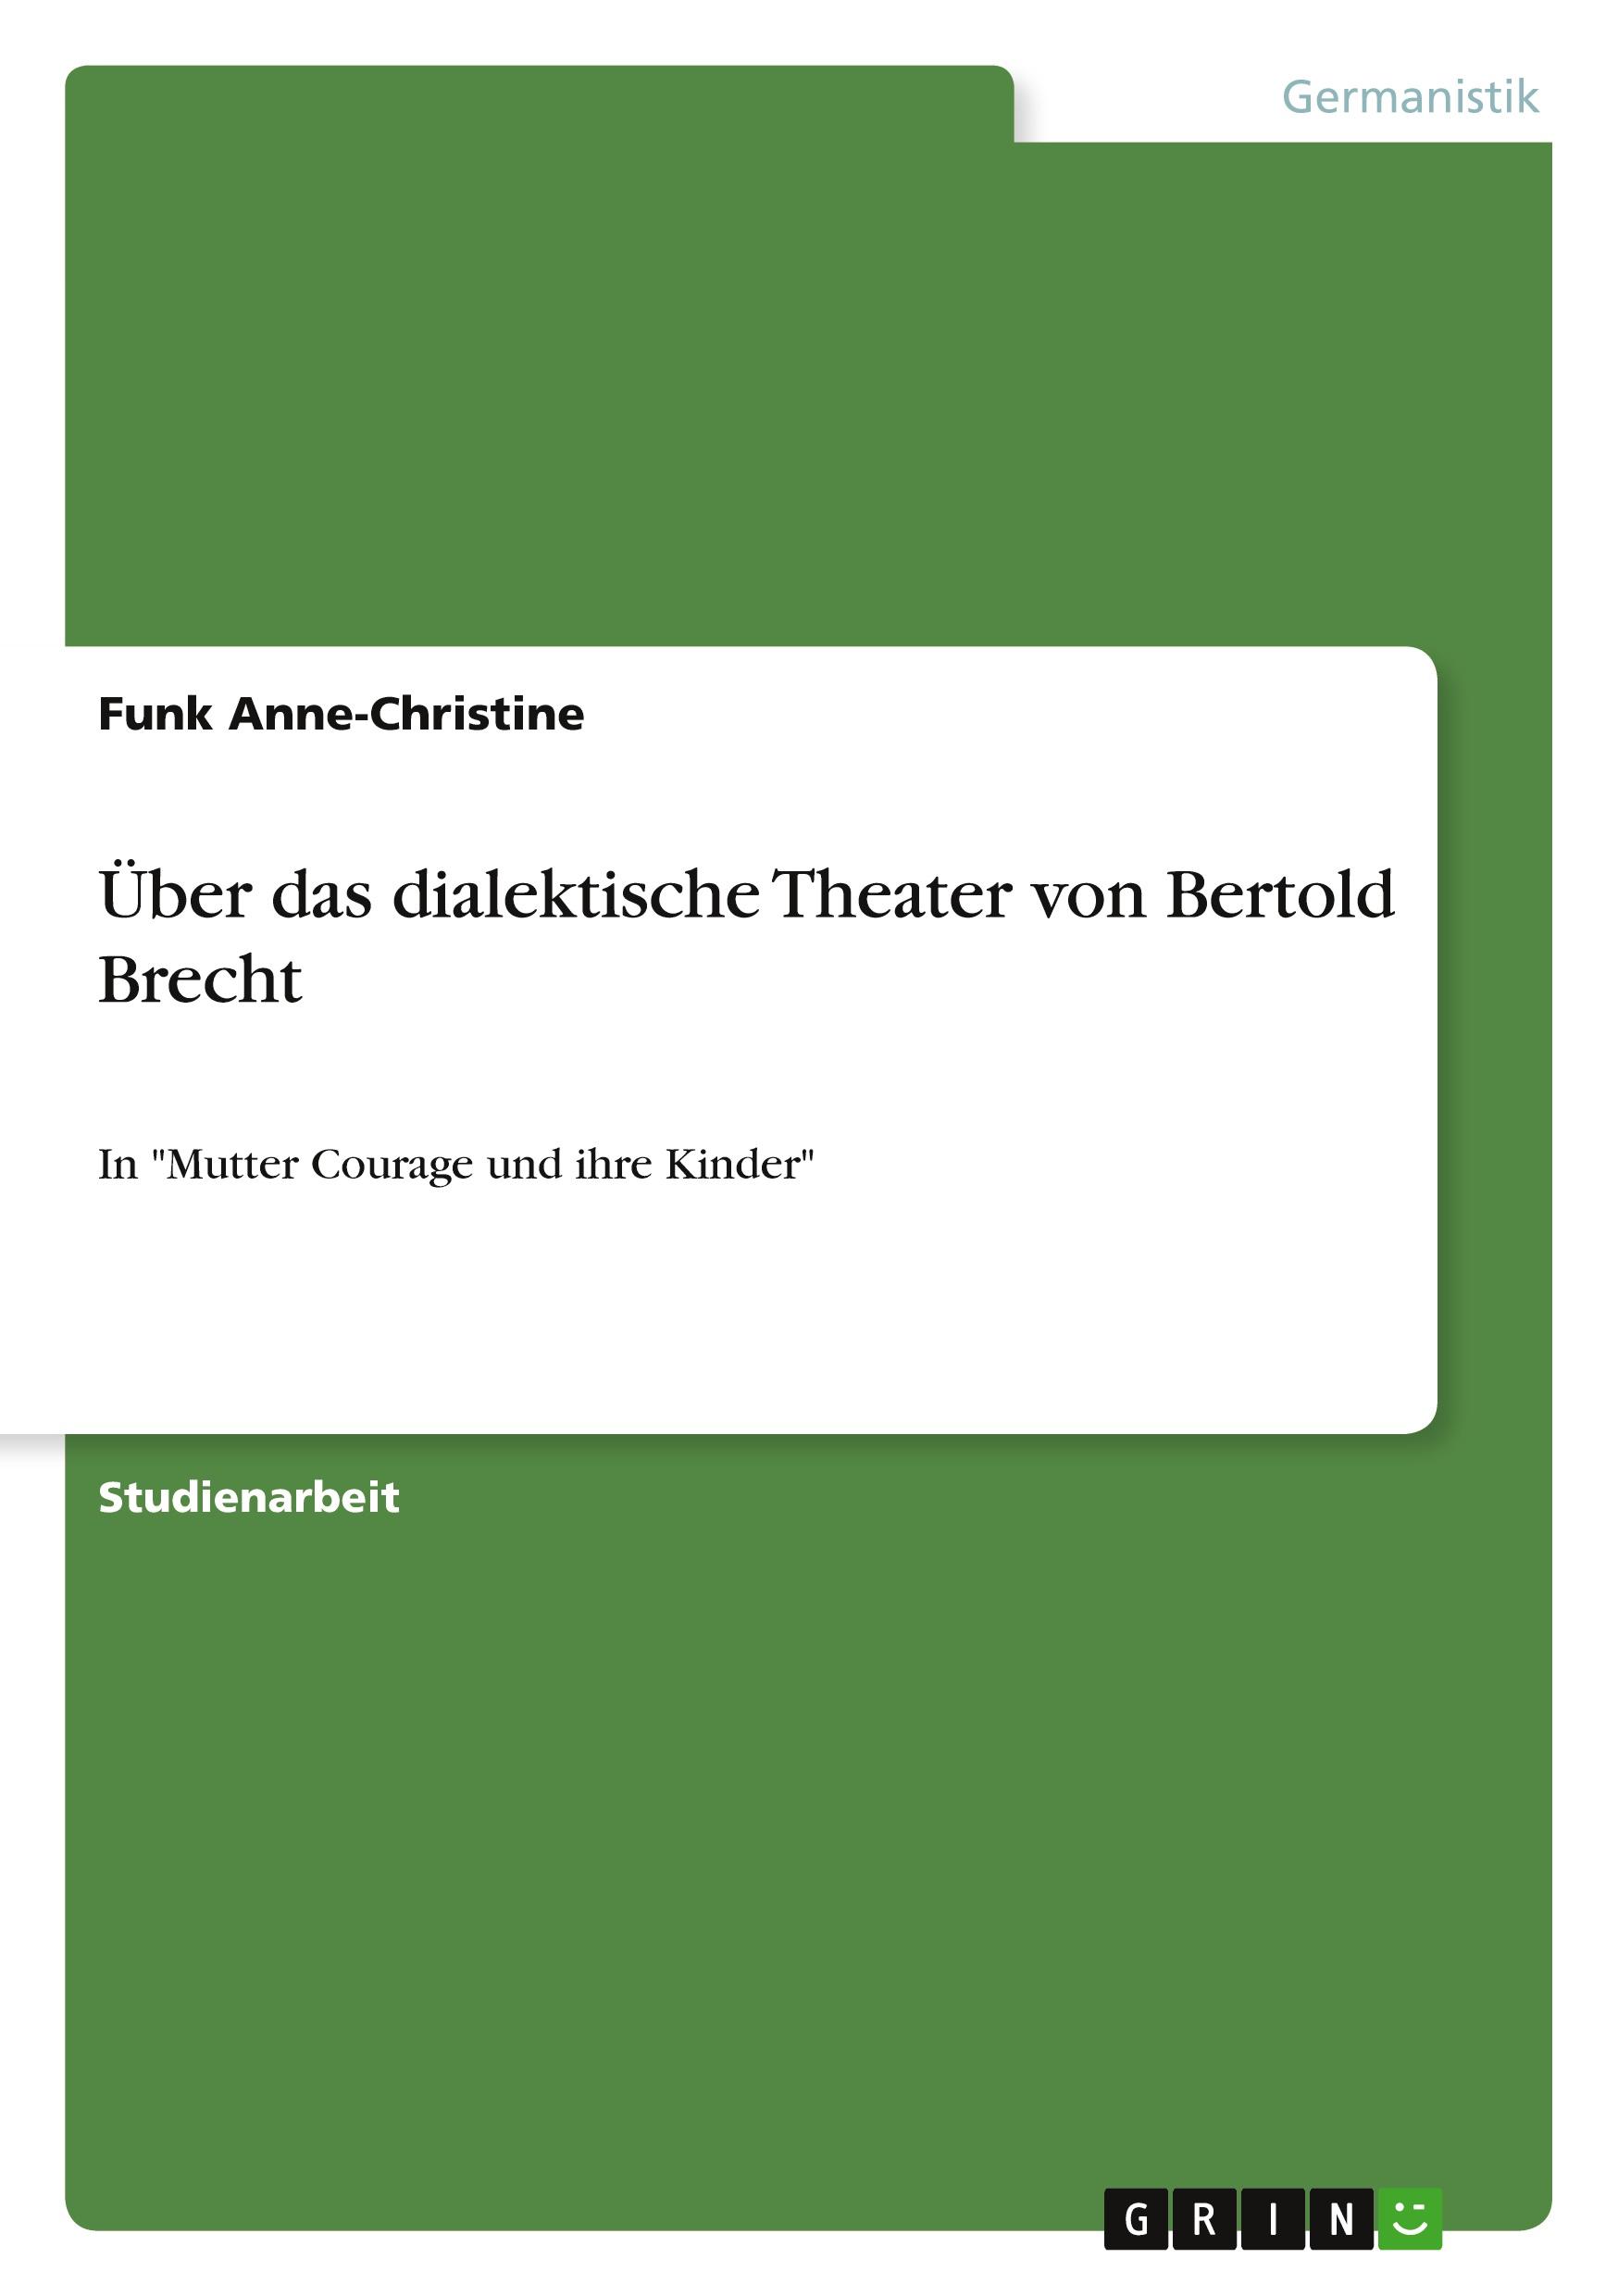 Über das dialektische Theater von Bertold Brecht | In 